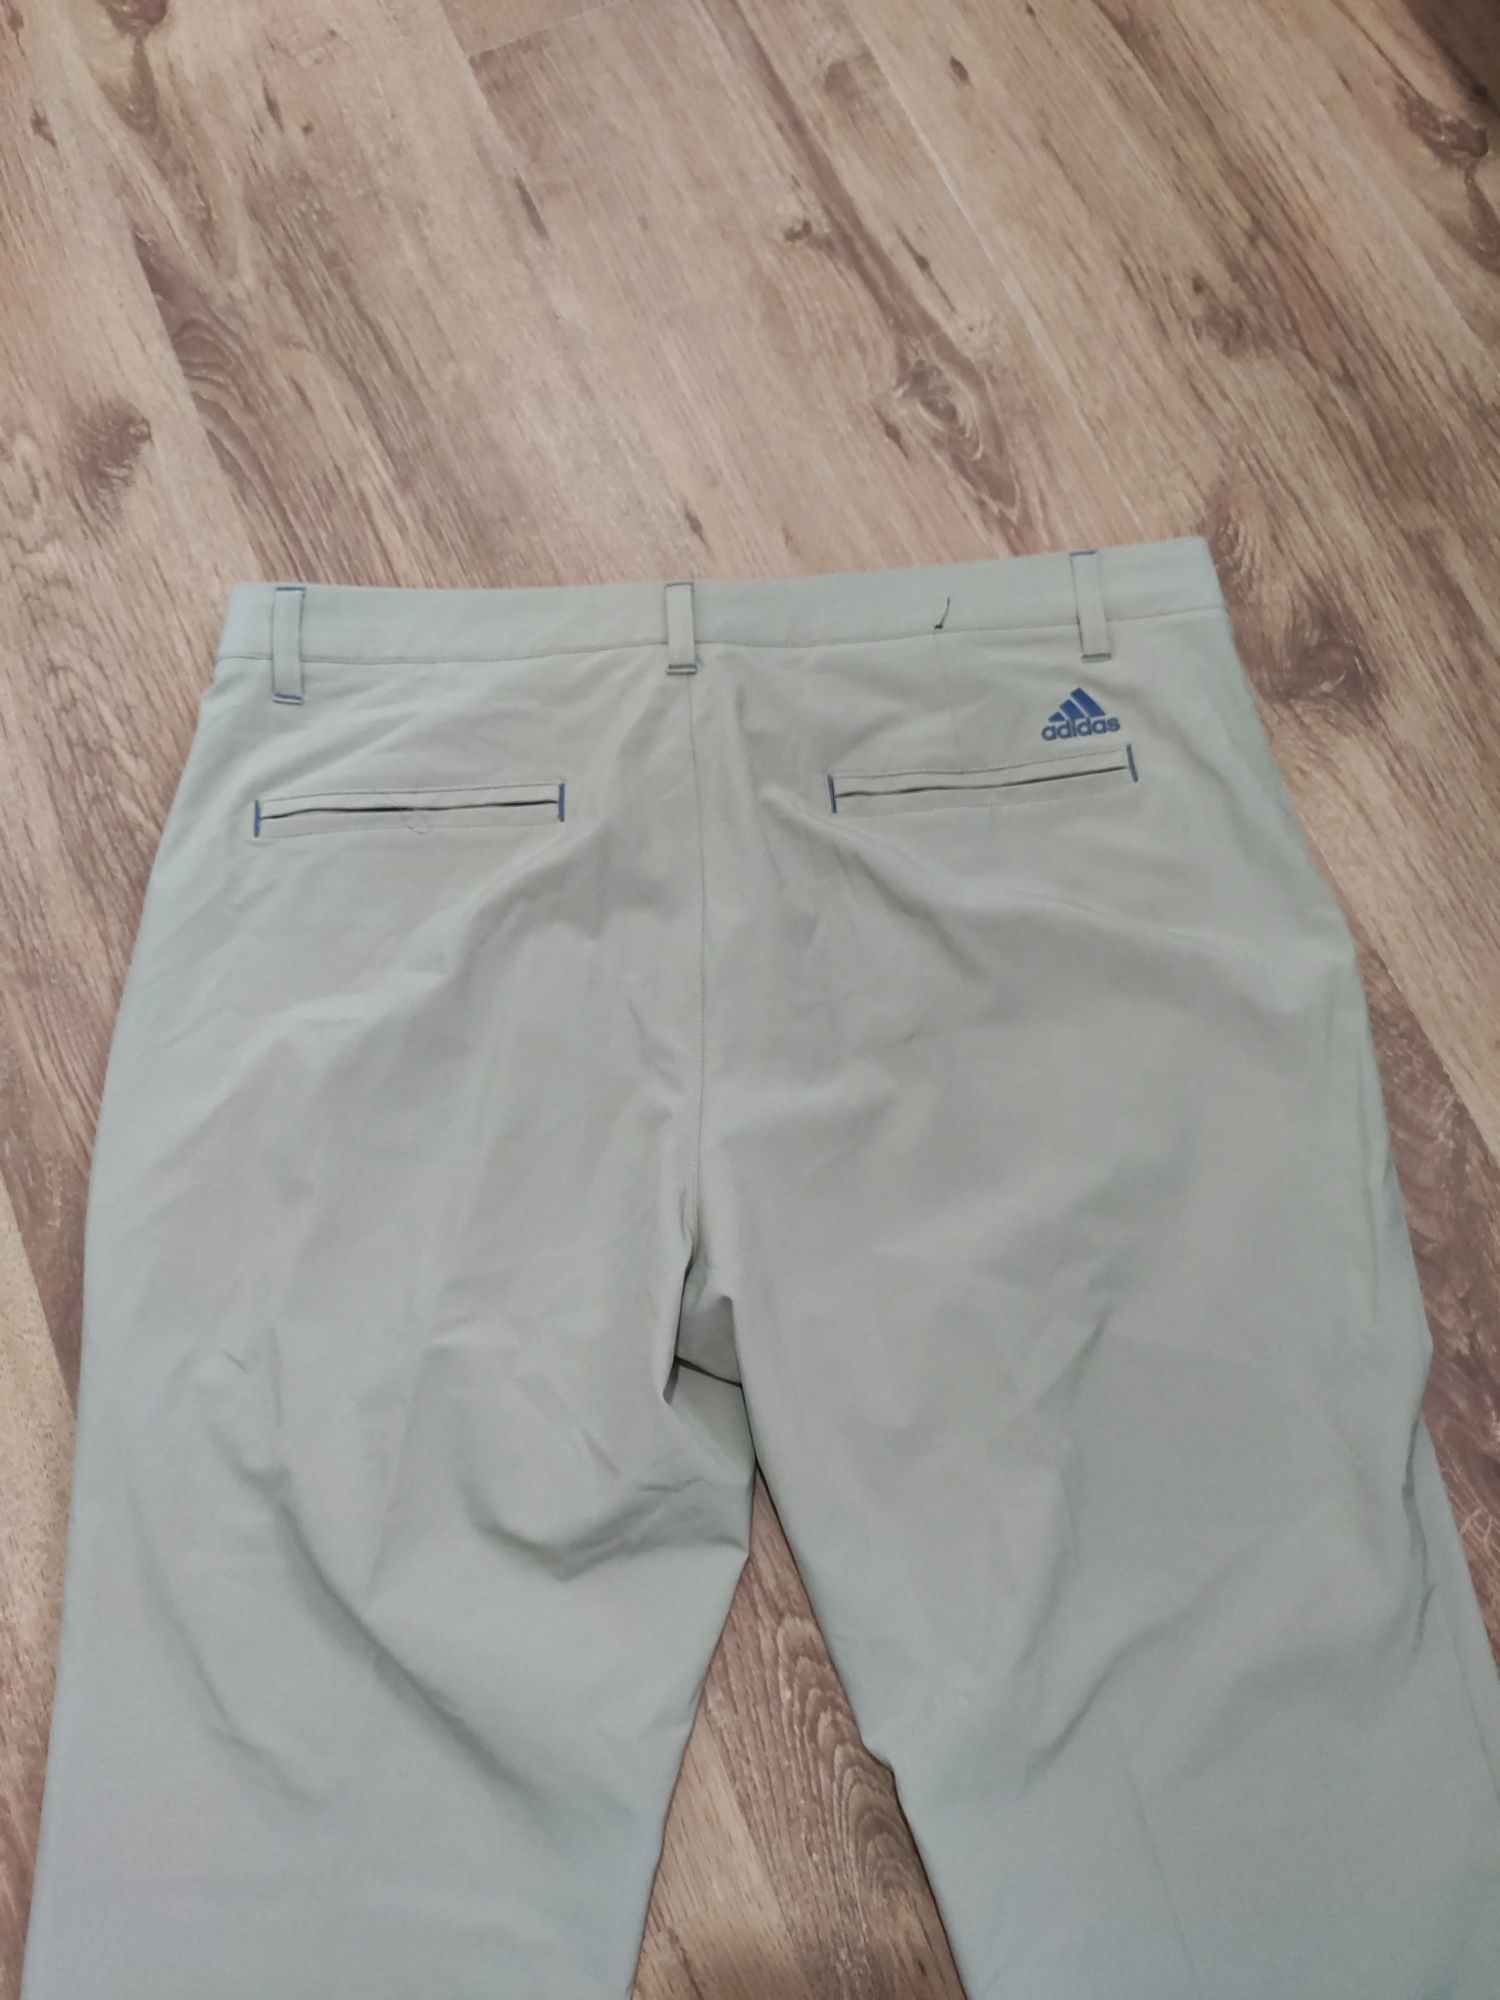 Pantaloni Adidas Golf subțiri elastici mărimea 34x30